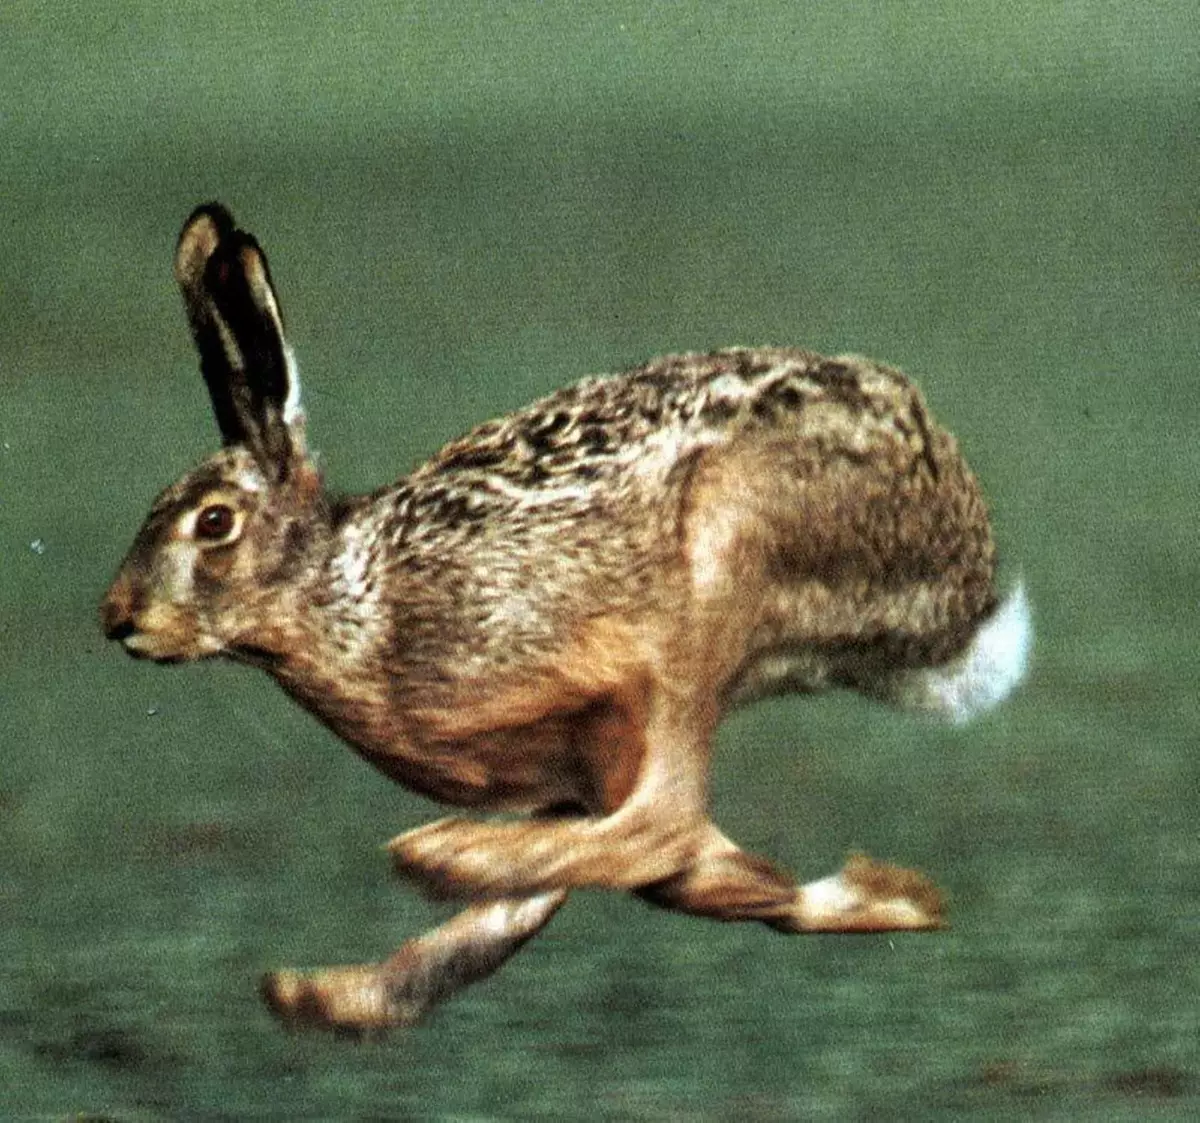 Hare run